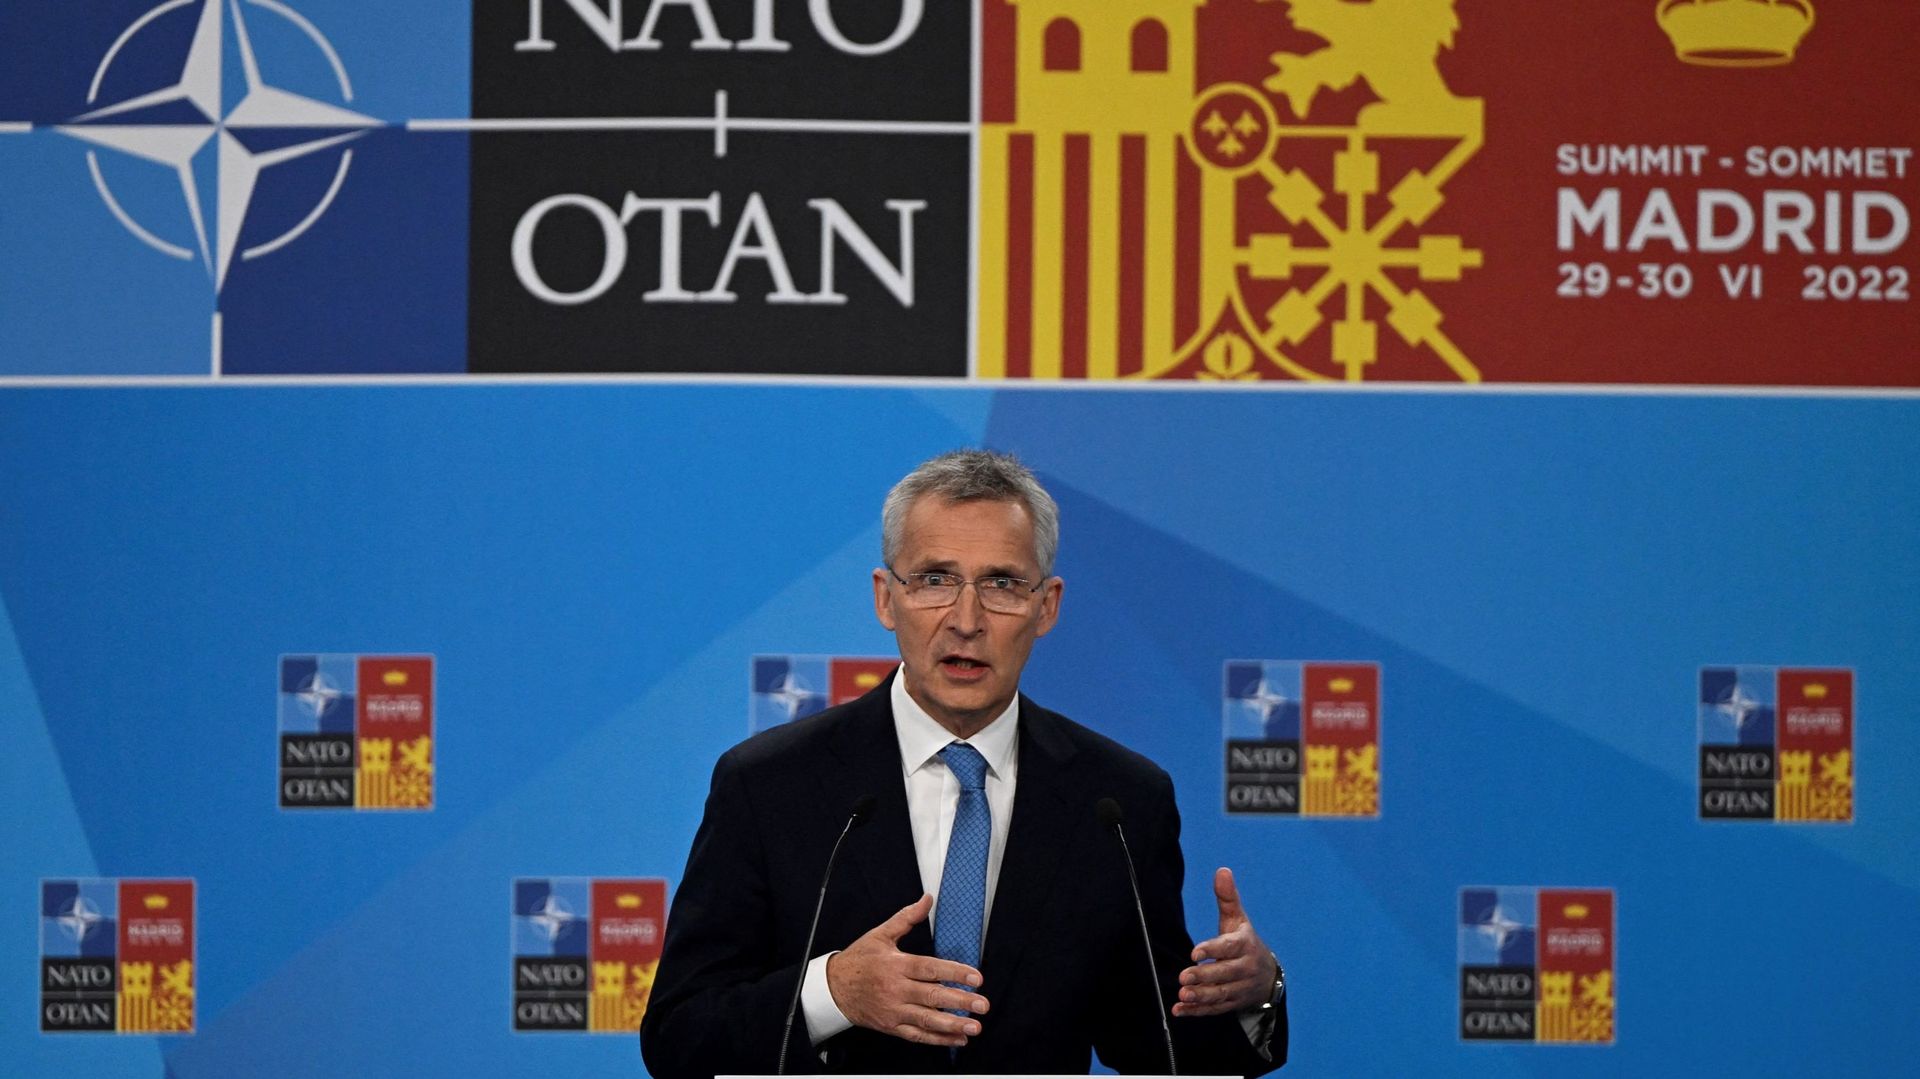 Le secrétaire général de l'OTAN, Jens Stoltenberg, prend la parole lors d'une conférence de presse pendant le sommet de l'OTAN au centre de congrès Ifema à Madrid, le 29 juin 2022. Pierre-Philippe MARCOU / AFP
